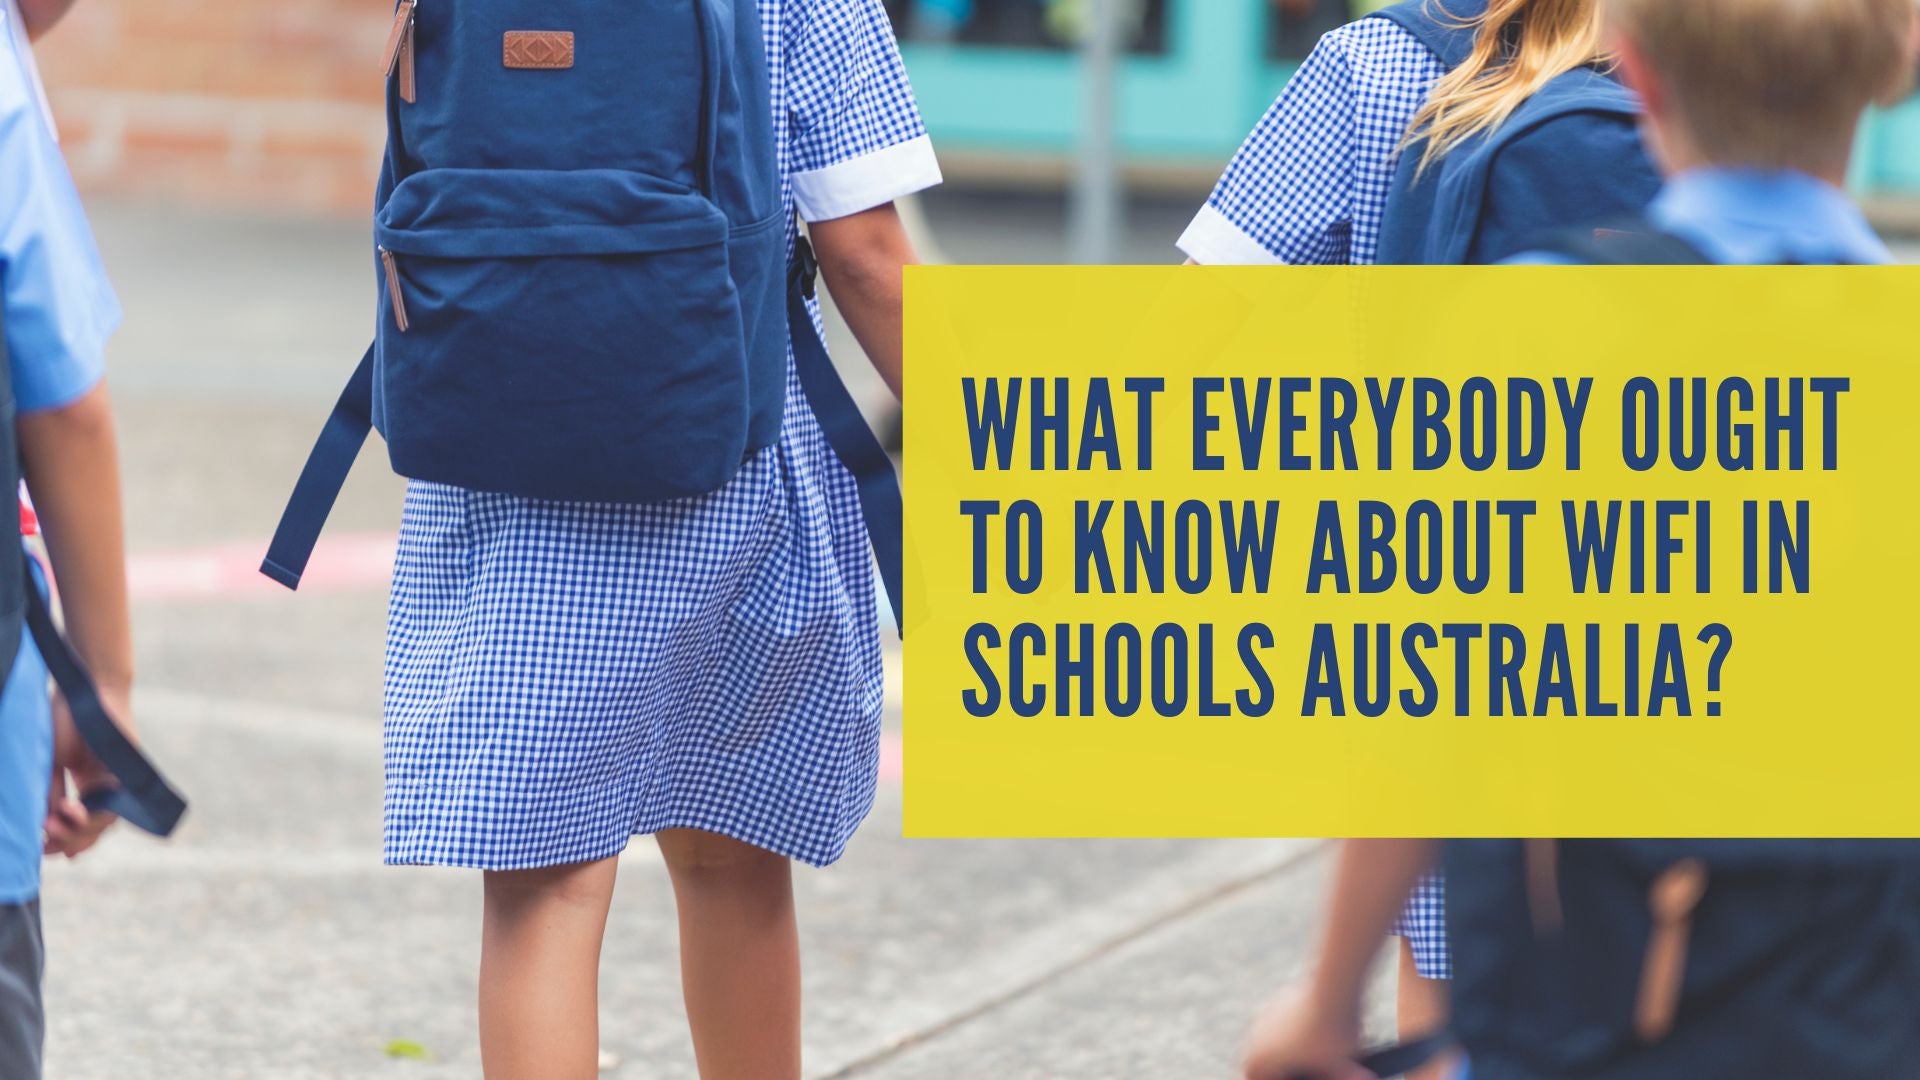 WIFI in schools in Australia?